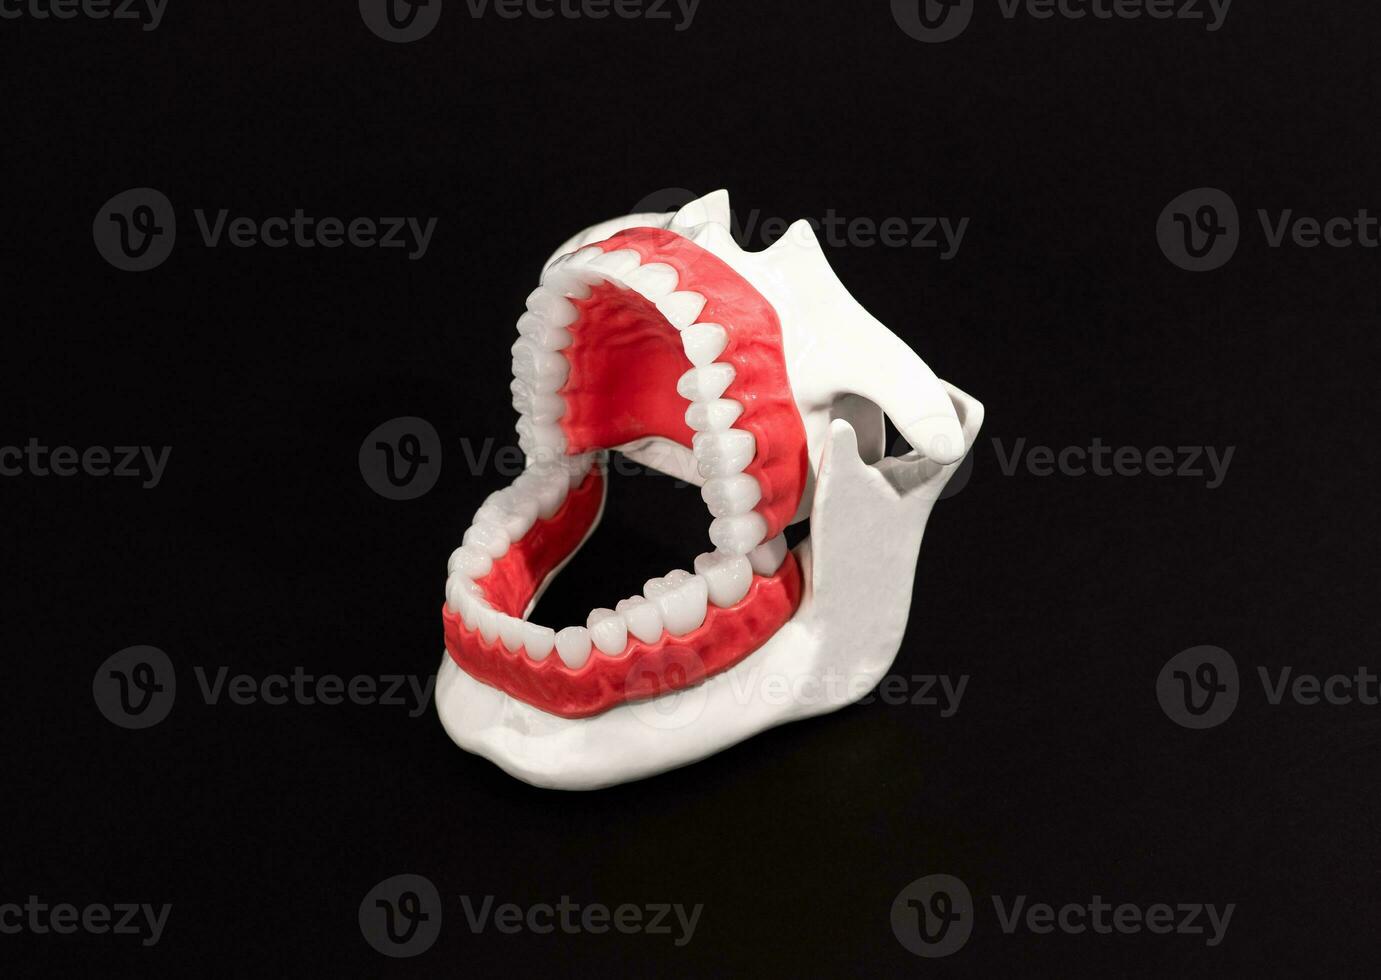 mänsklig käke med tänder och tandkött anatomi modell isolerat på svart bakgrund. öppnad käke placera. friska tänder, dental vård, och ortodontisk medicinsk sjukvård begrepp. foto